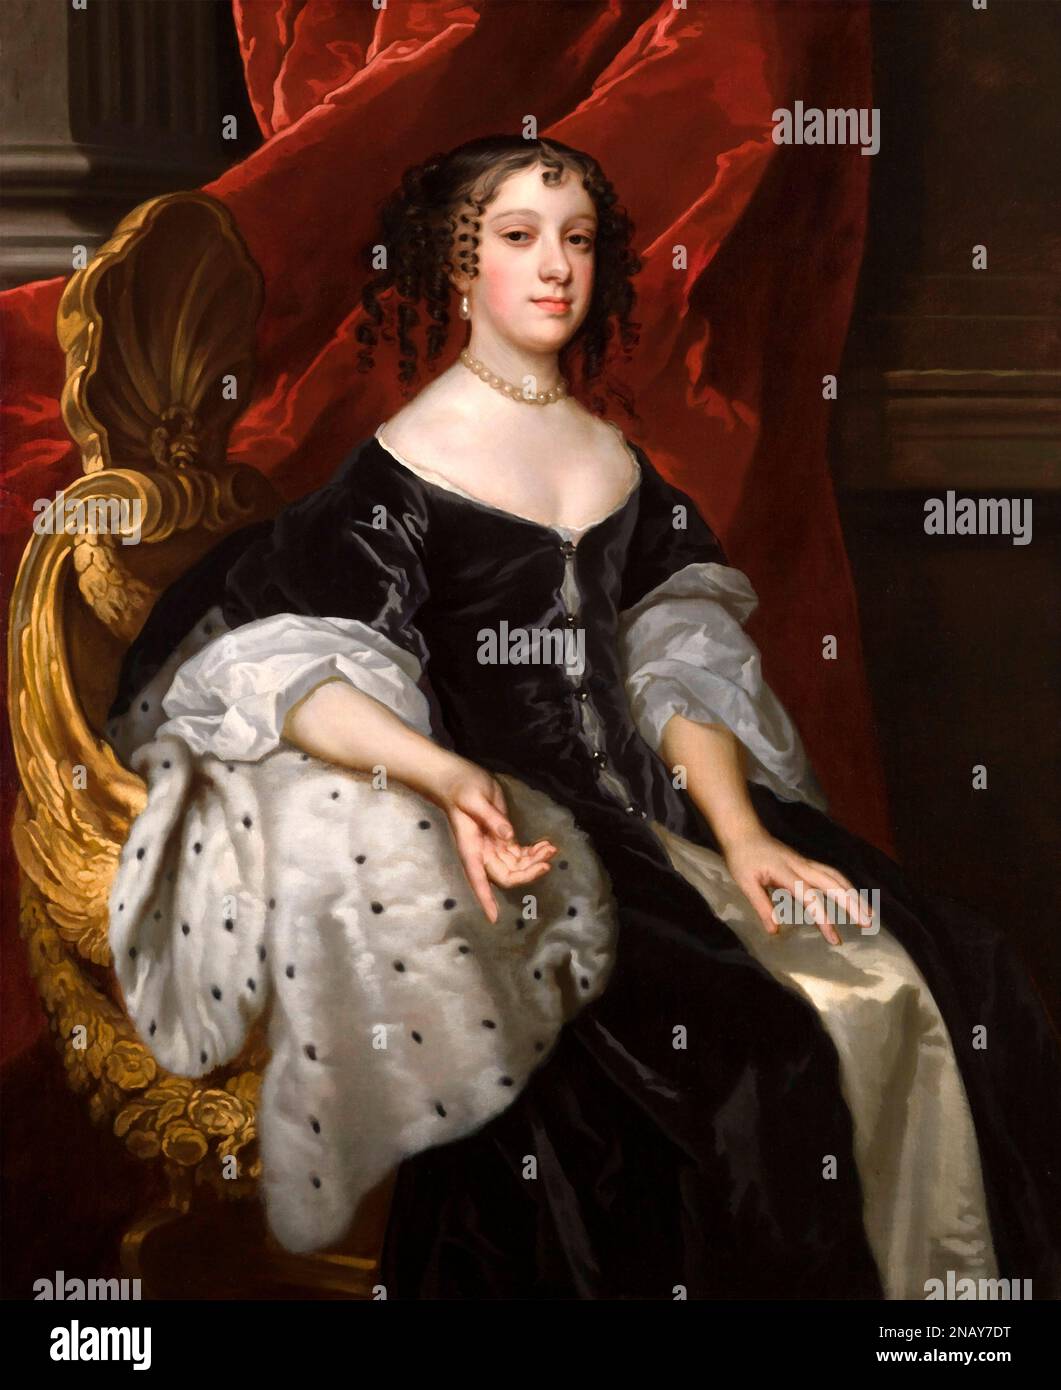 Catherine de Braganza (1638-1705), la reine Consort, femme du roi Charles II Portrait de Peter Lely, huile sur toile, c. 1665 Banque D'Images